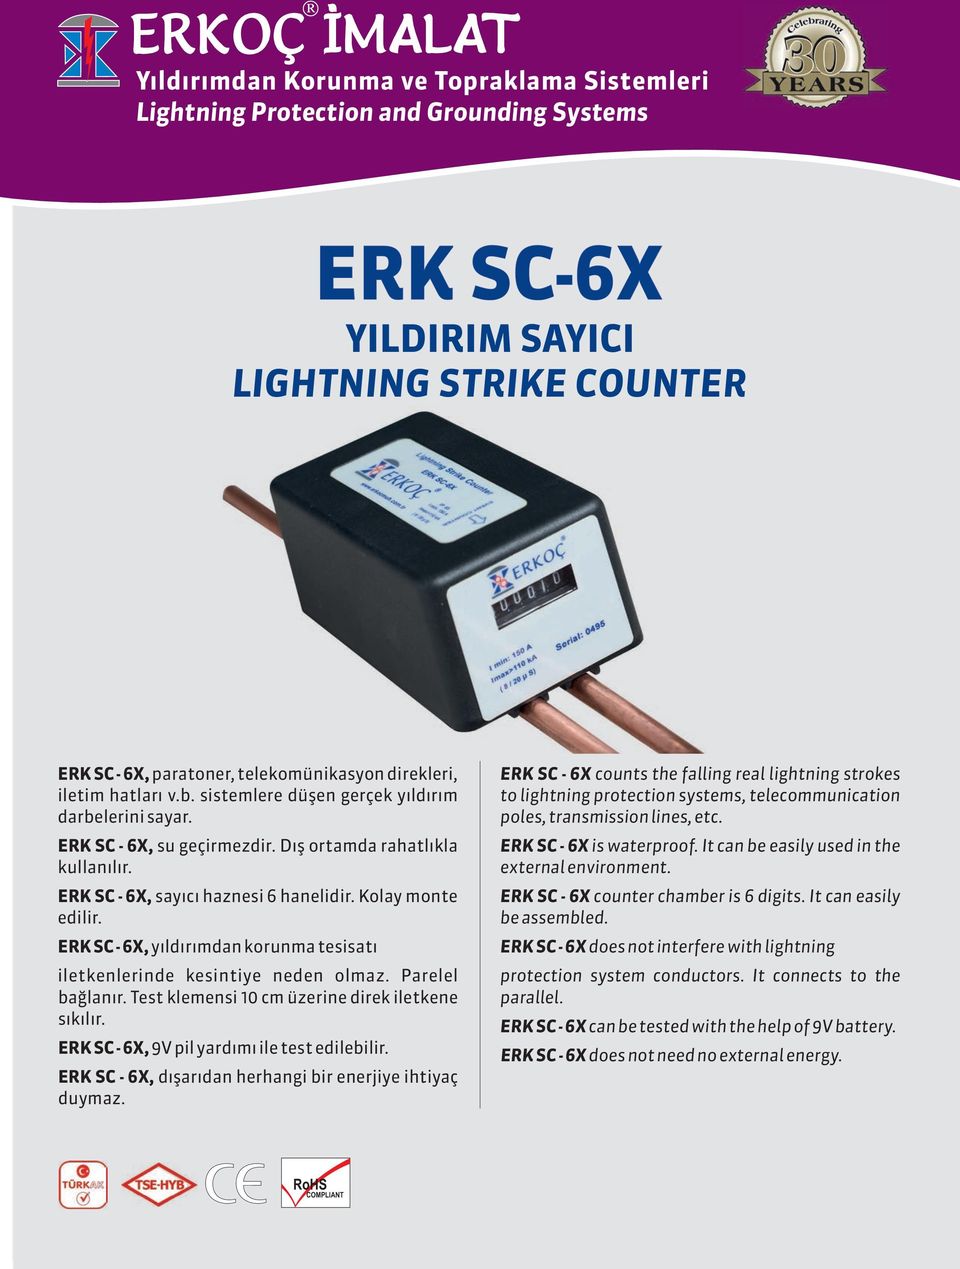 ERK SC - 6X, y ld r mdan korunma tesisat iletkenlerinde kesintiye neden olmaz. Parelel ba lan r. Test klemensi 10 cm üzerine direk iletkene s k l r. ERK SC - 6X, 9V pil yard m ile test edilebilir.